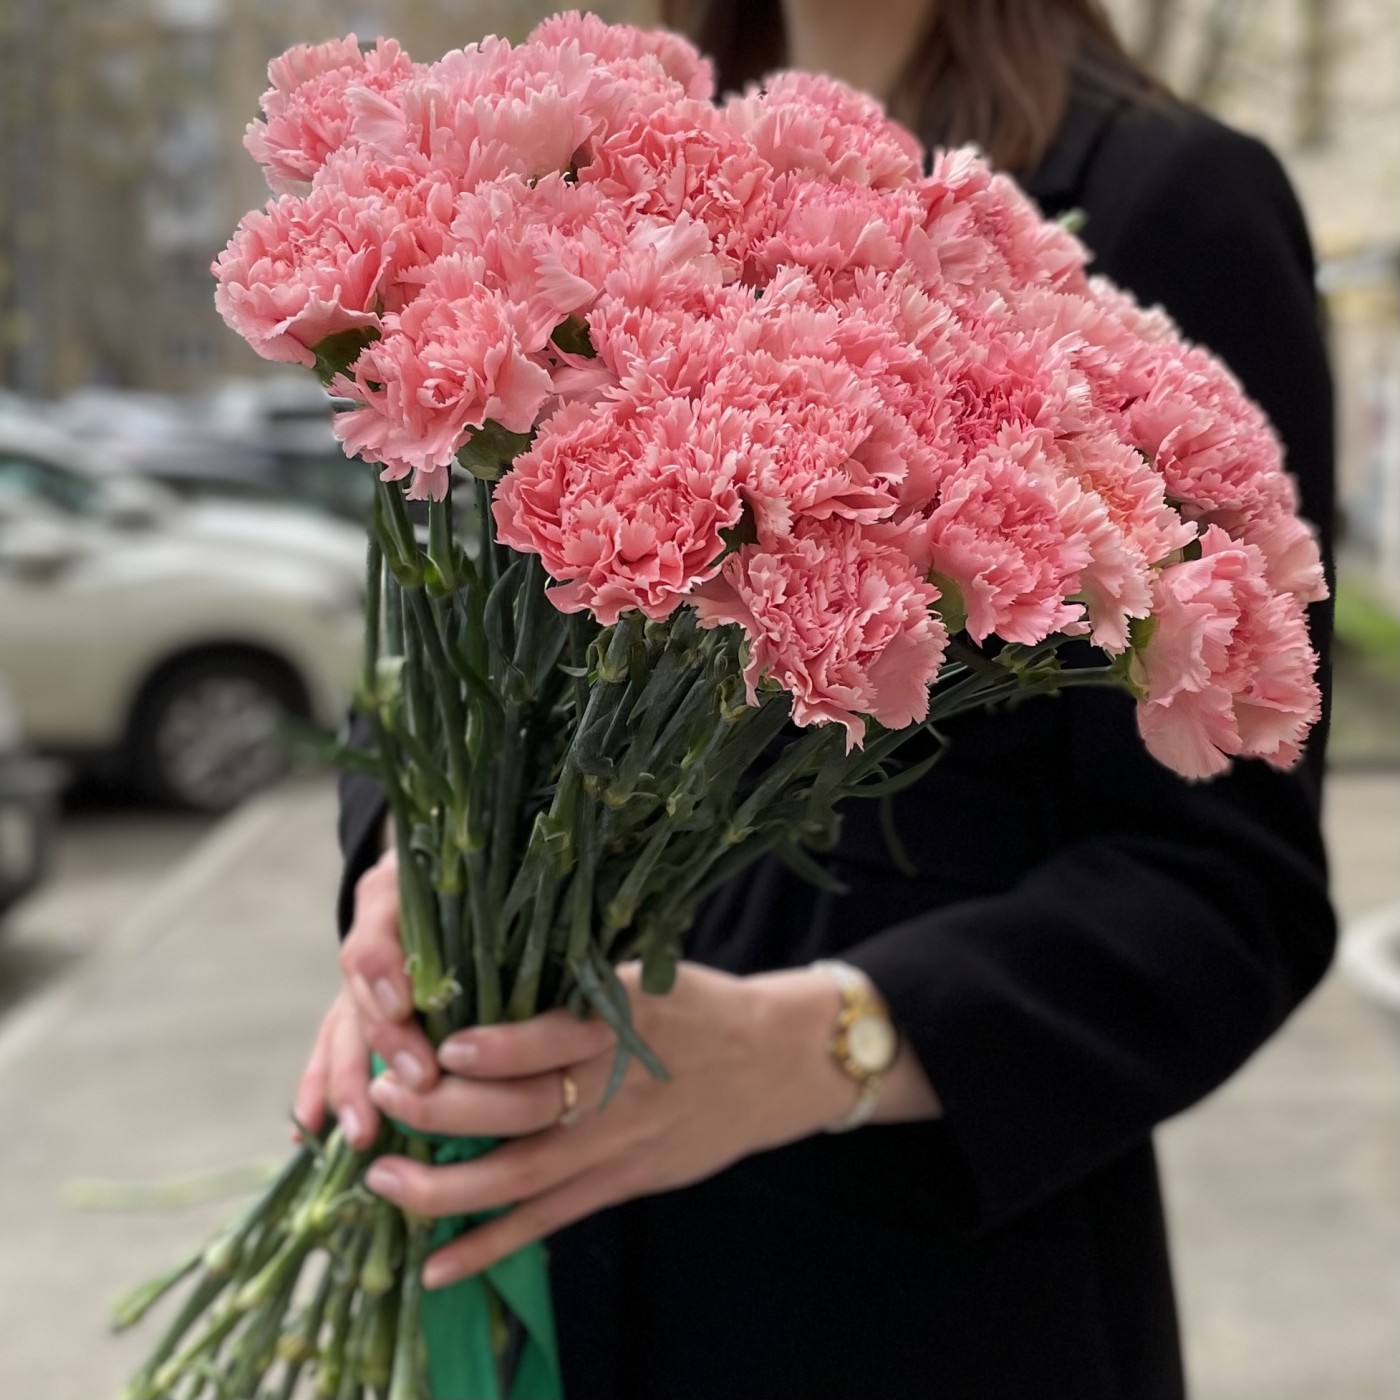 Гвоздика цветы купить в москве дешево сладости за 50 рублей